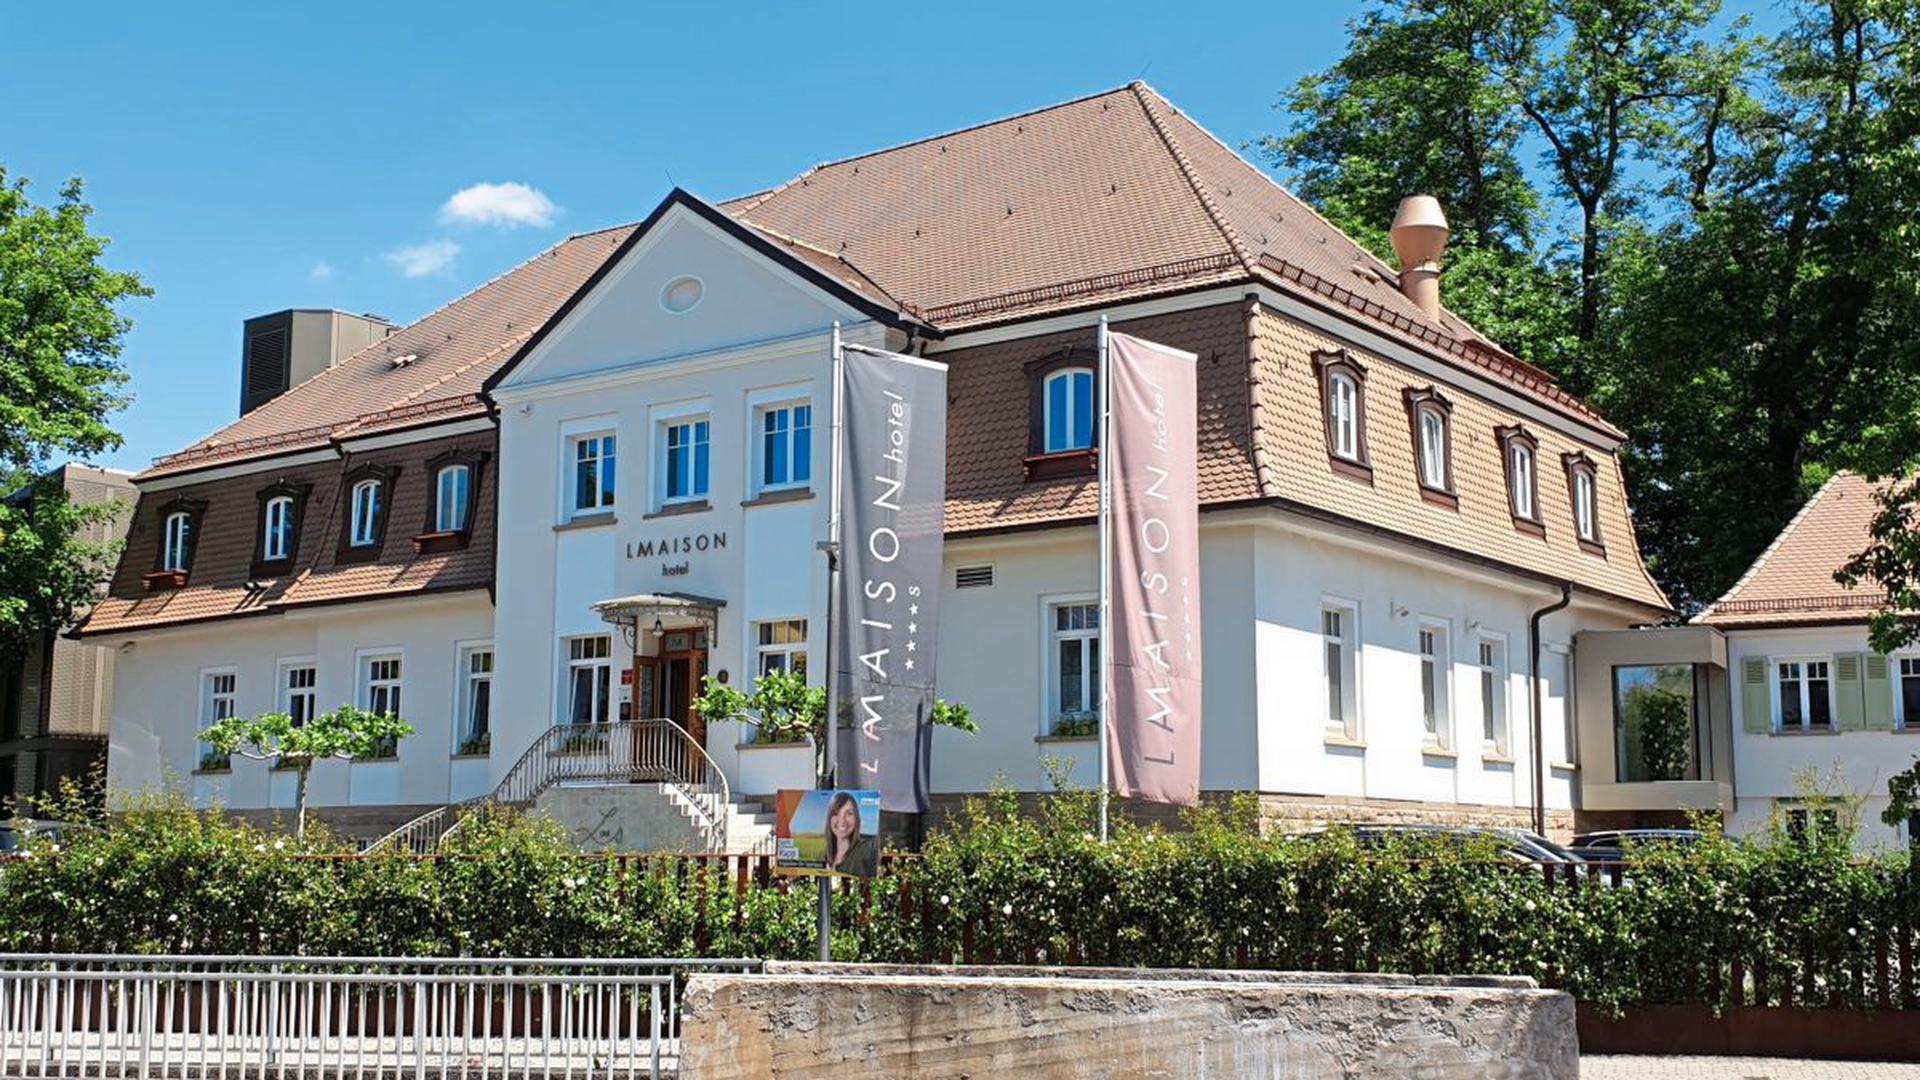 das Hotel "La Maison" in Saarlouis im Saarland